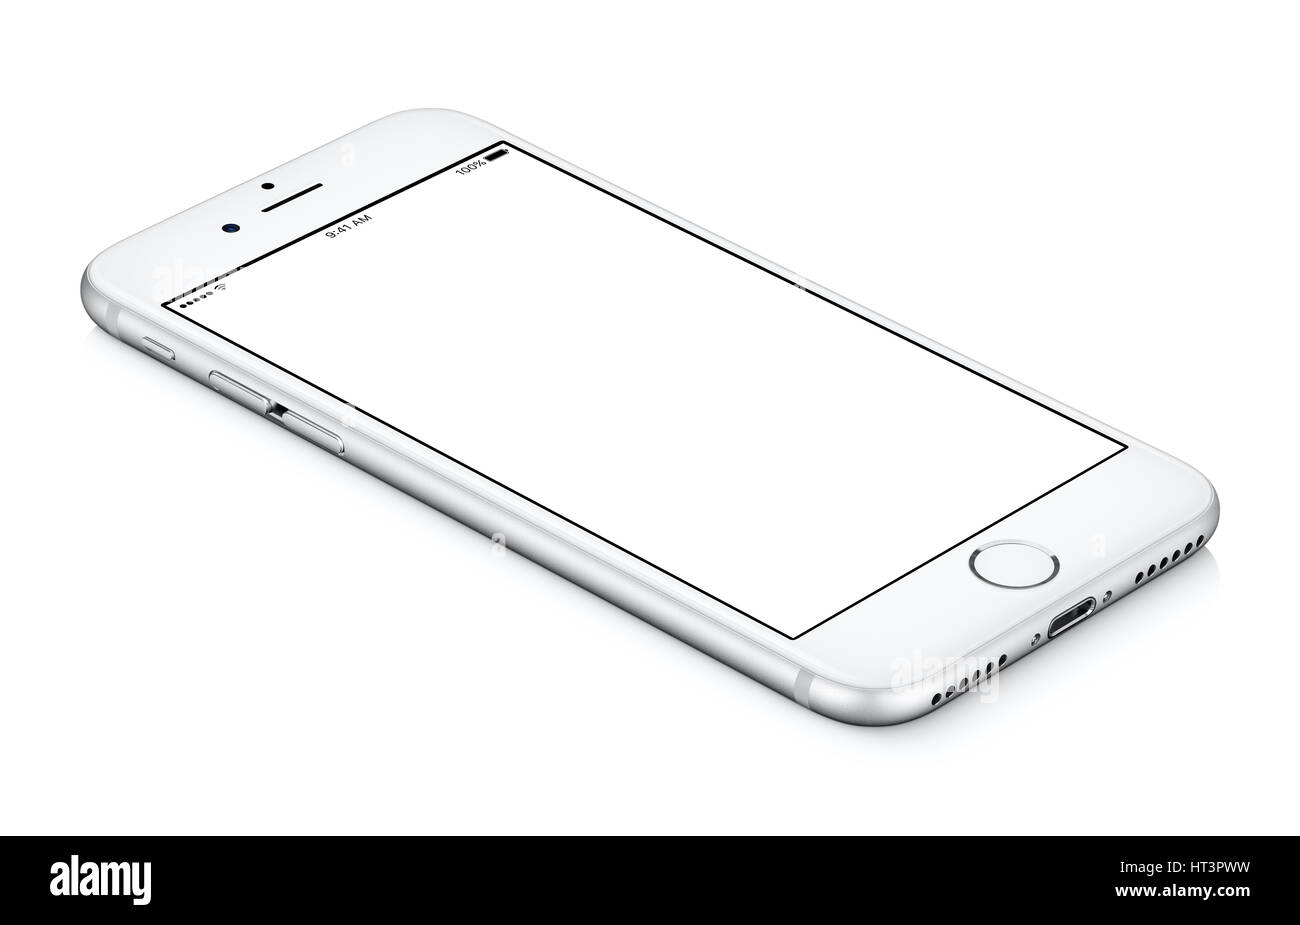 Weiße mobile Smartphone-Modell gegen den Uhrzeigersinn gedreht, liegt auf der Oberfläche mit unbelegten Schirm isoliert auf weißem Hintergrund. Stockfoto